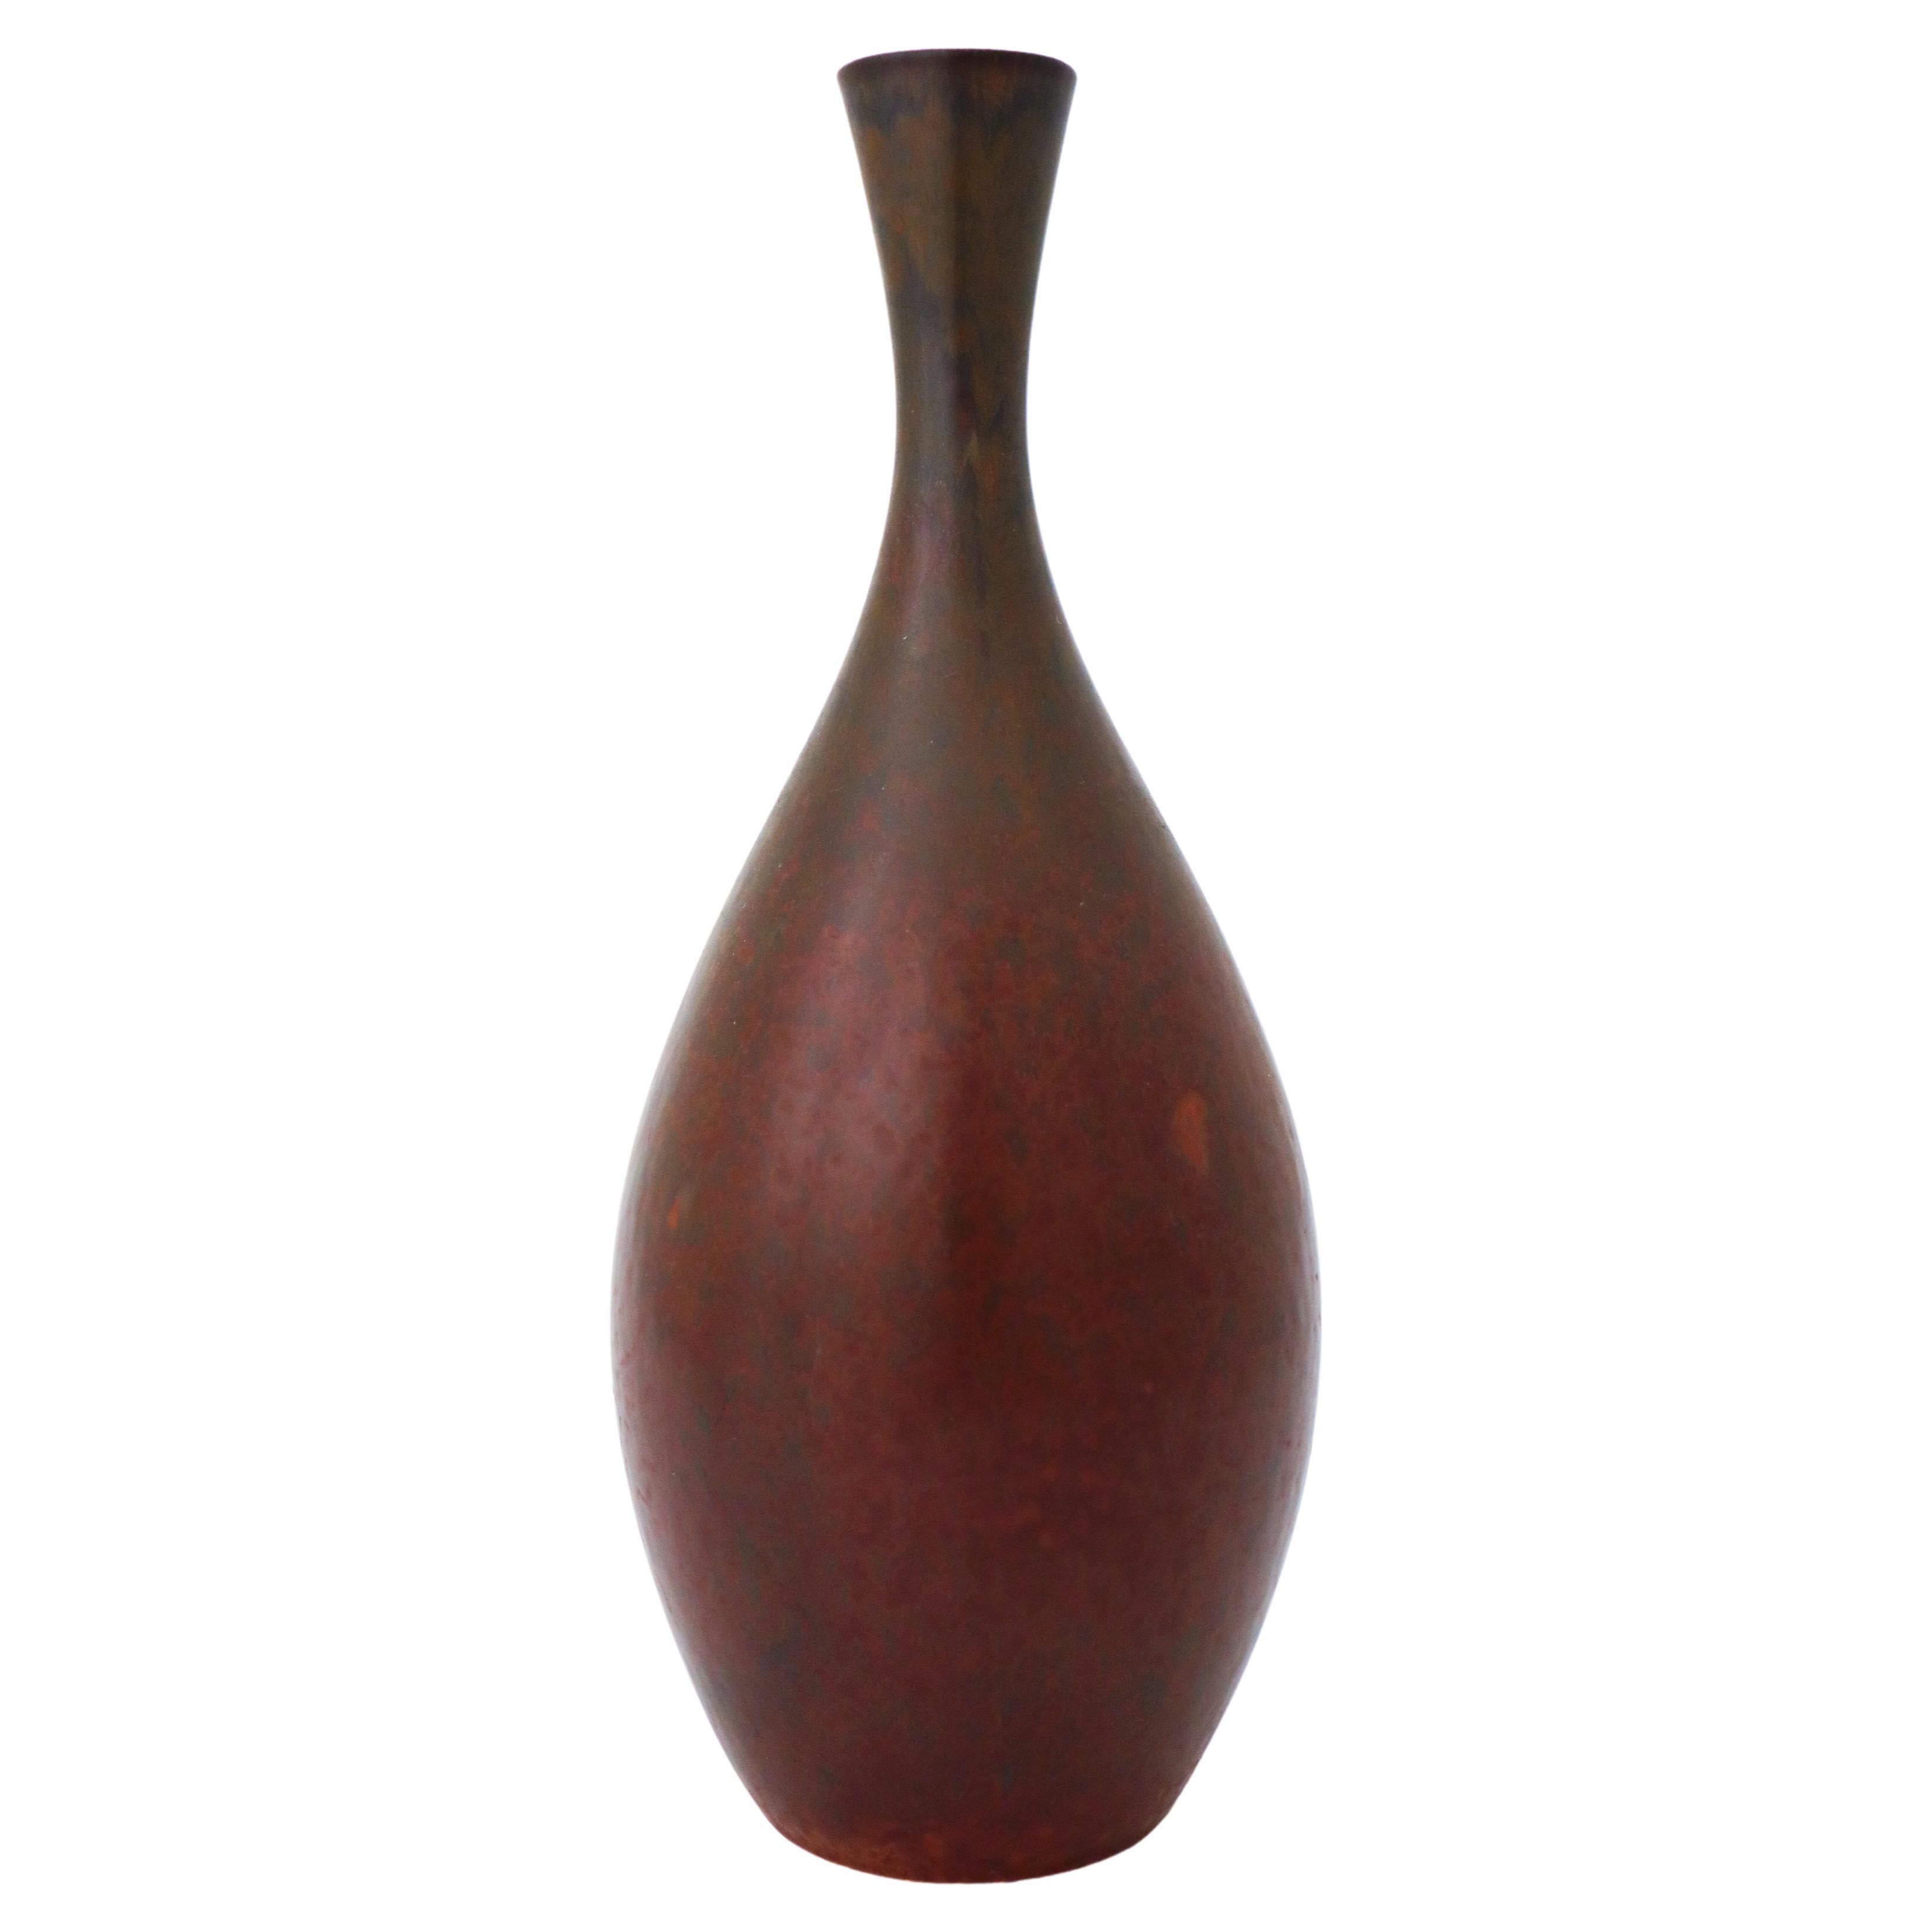 Lovely Brown Ceramic Vase - Carl-Harry Stålhane - Rörstrand - Mid 20th Century For Sale